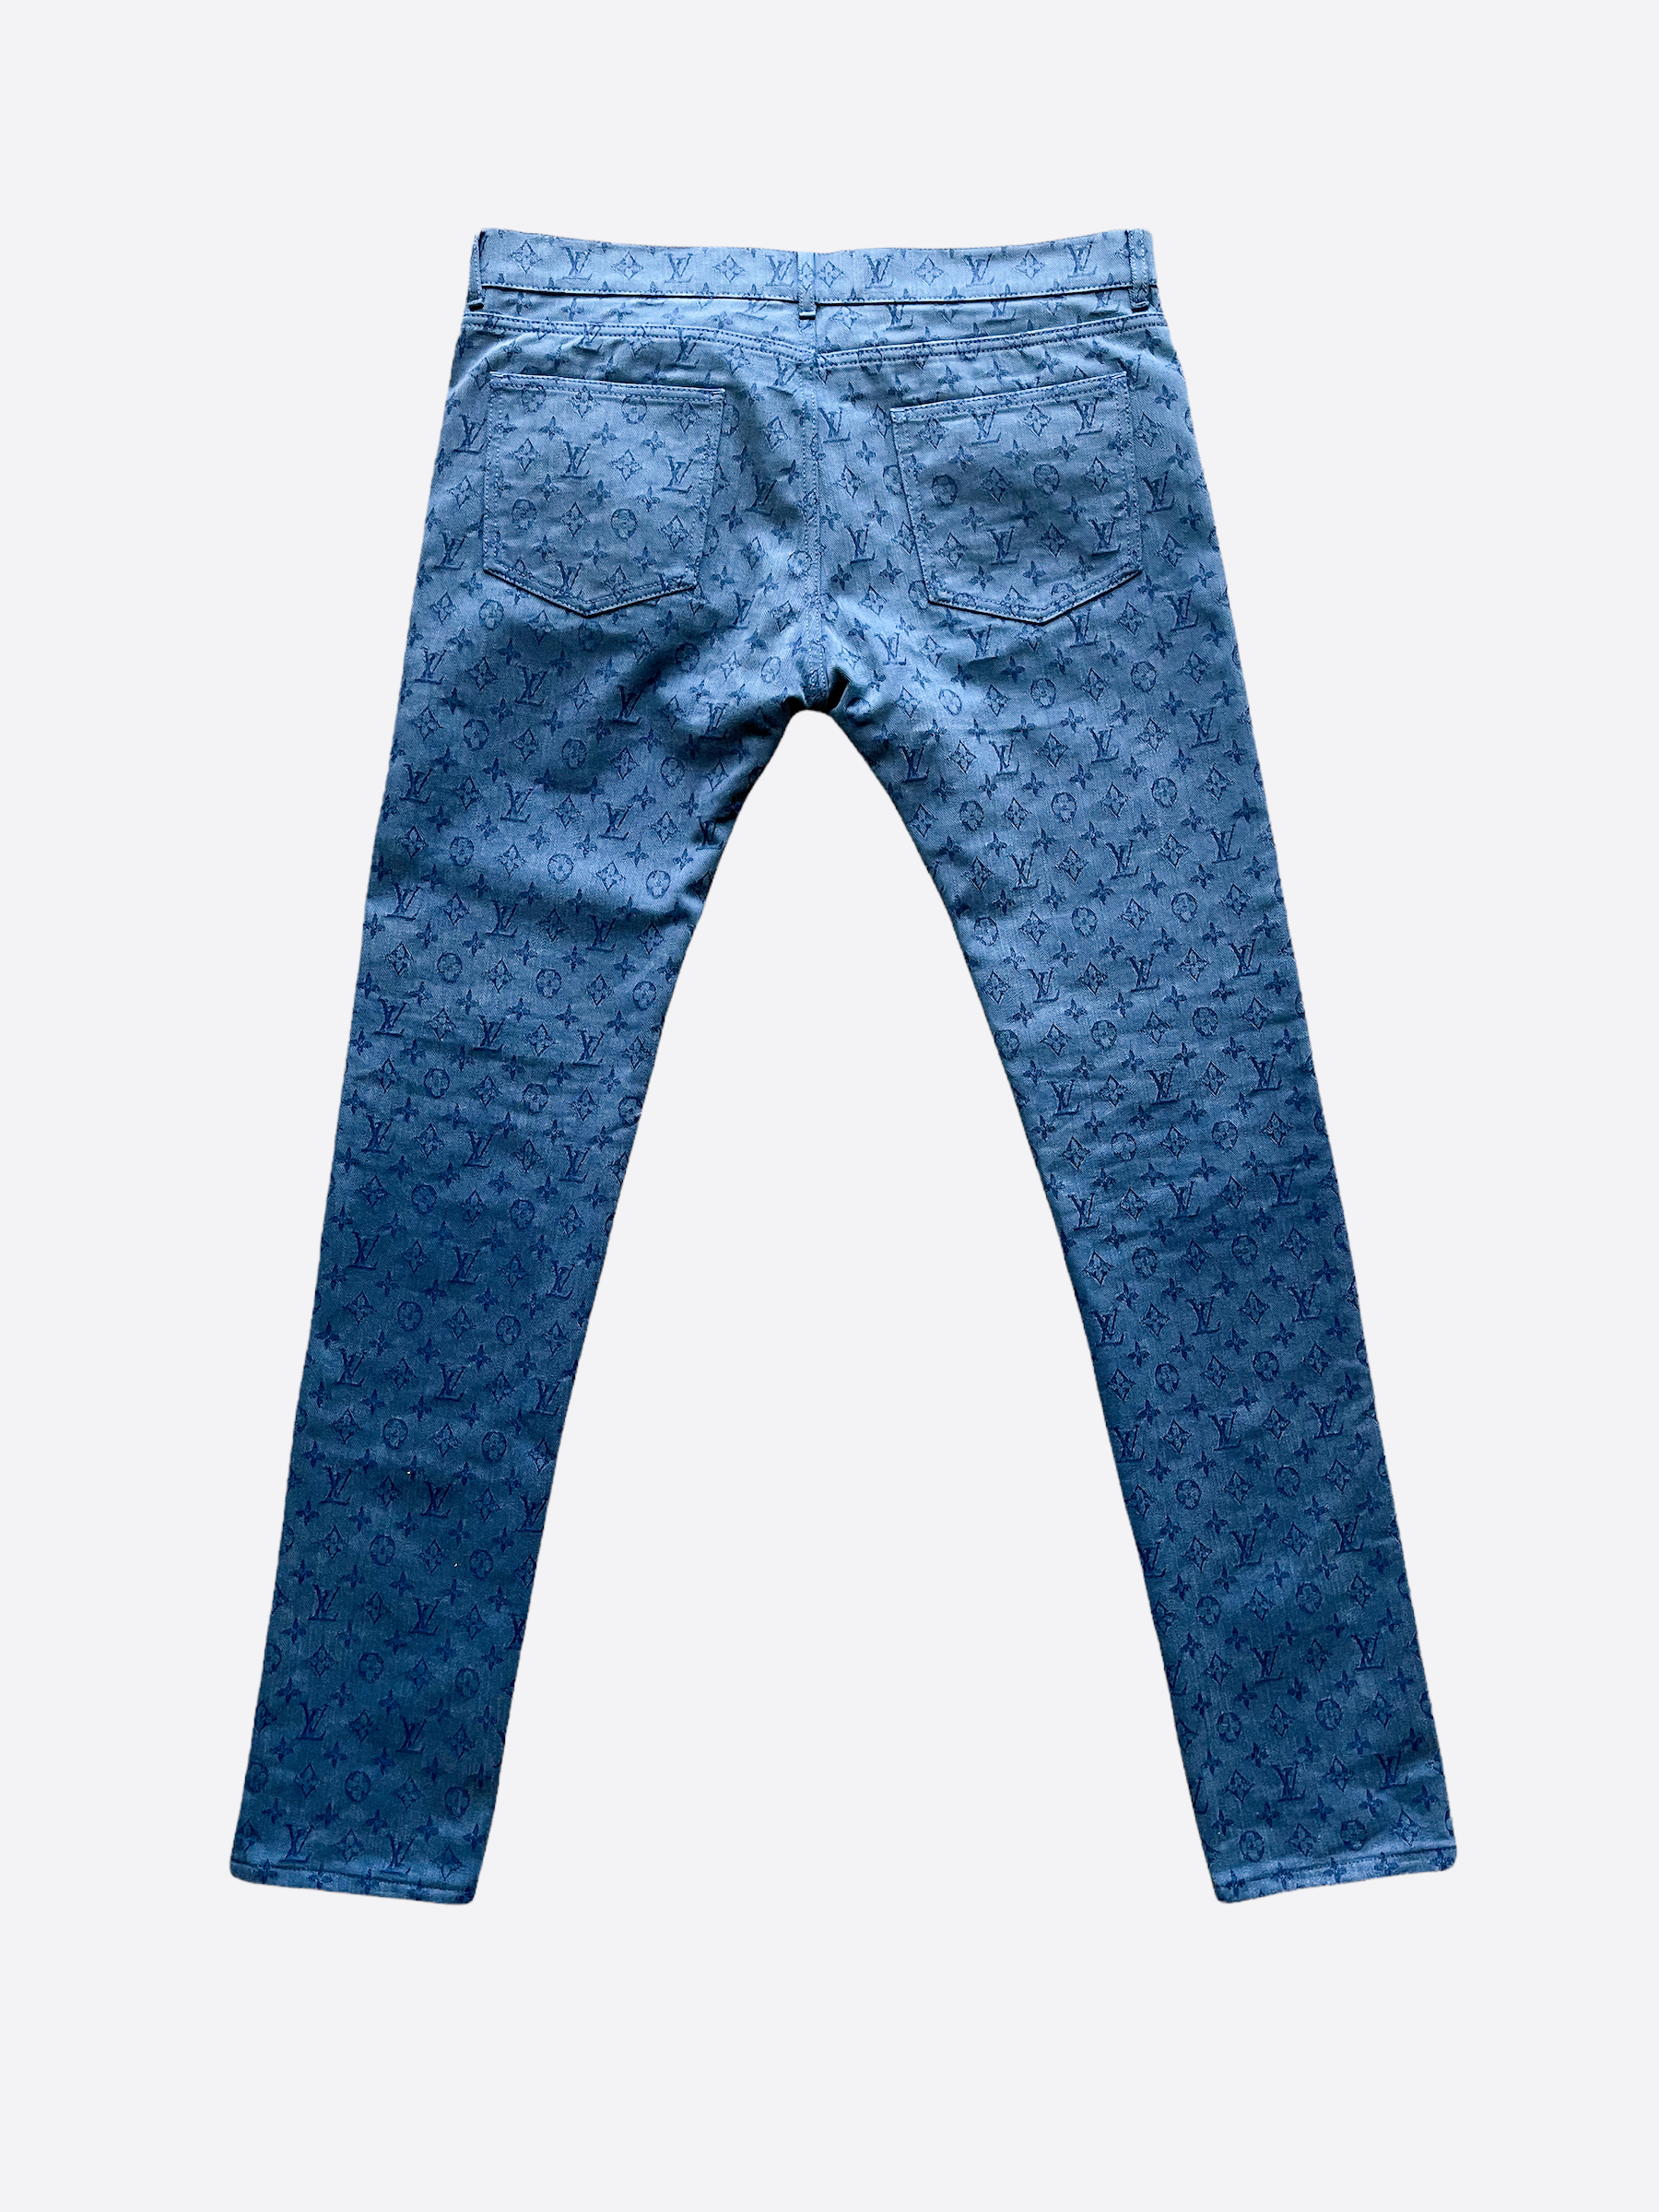 Louis Vuitton Monogram Printed Denim Pants Indigo. Size 33